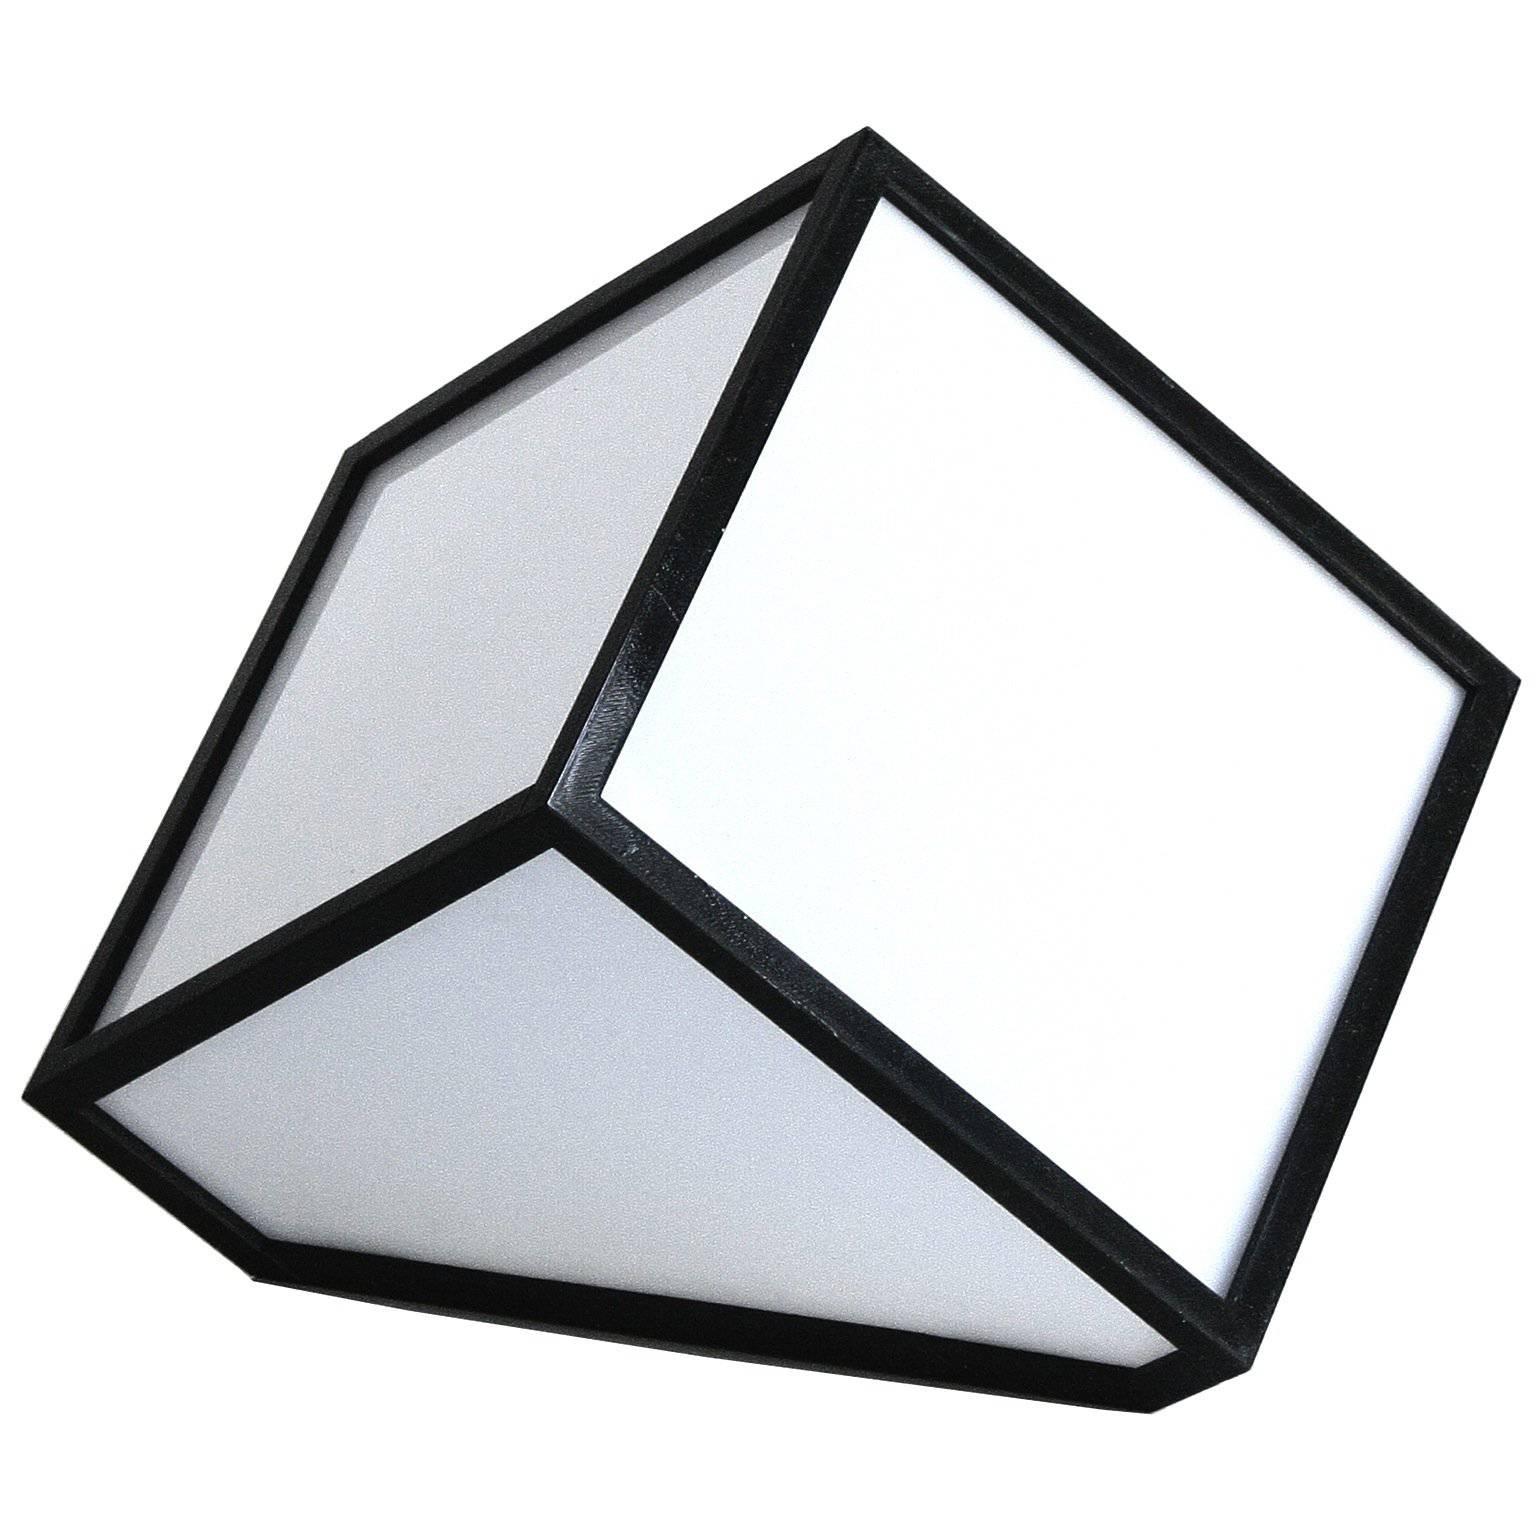 Fabiano Speziari Contemporary Minimalist 7face Cube Italian Table Lamp, 2017 For Sale